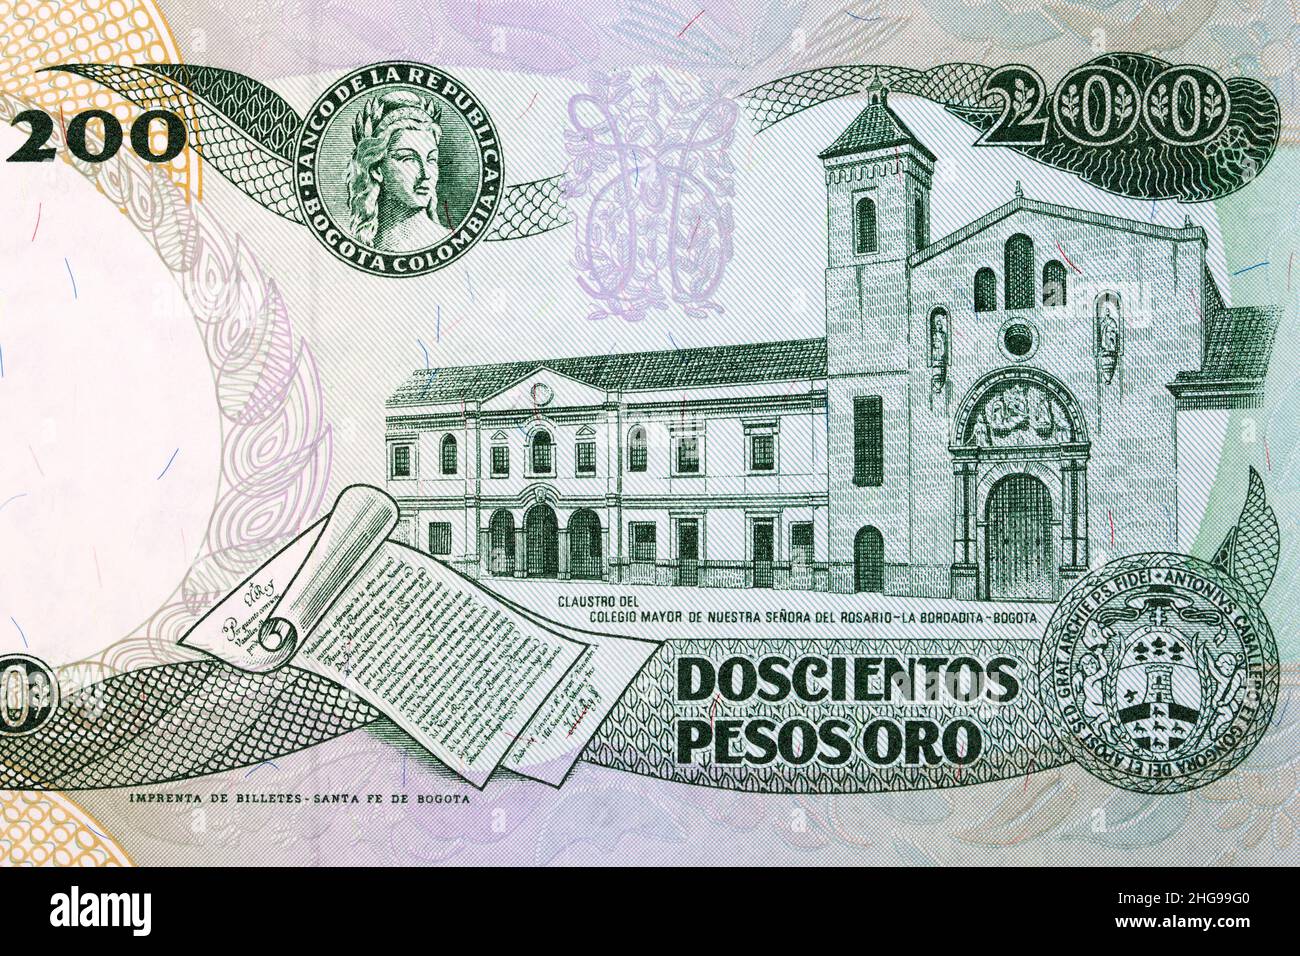 Monastery of the Colegio Mayor de Nuestra Senora del Rosario in Bogota from Colombian money Stock Photo